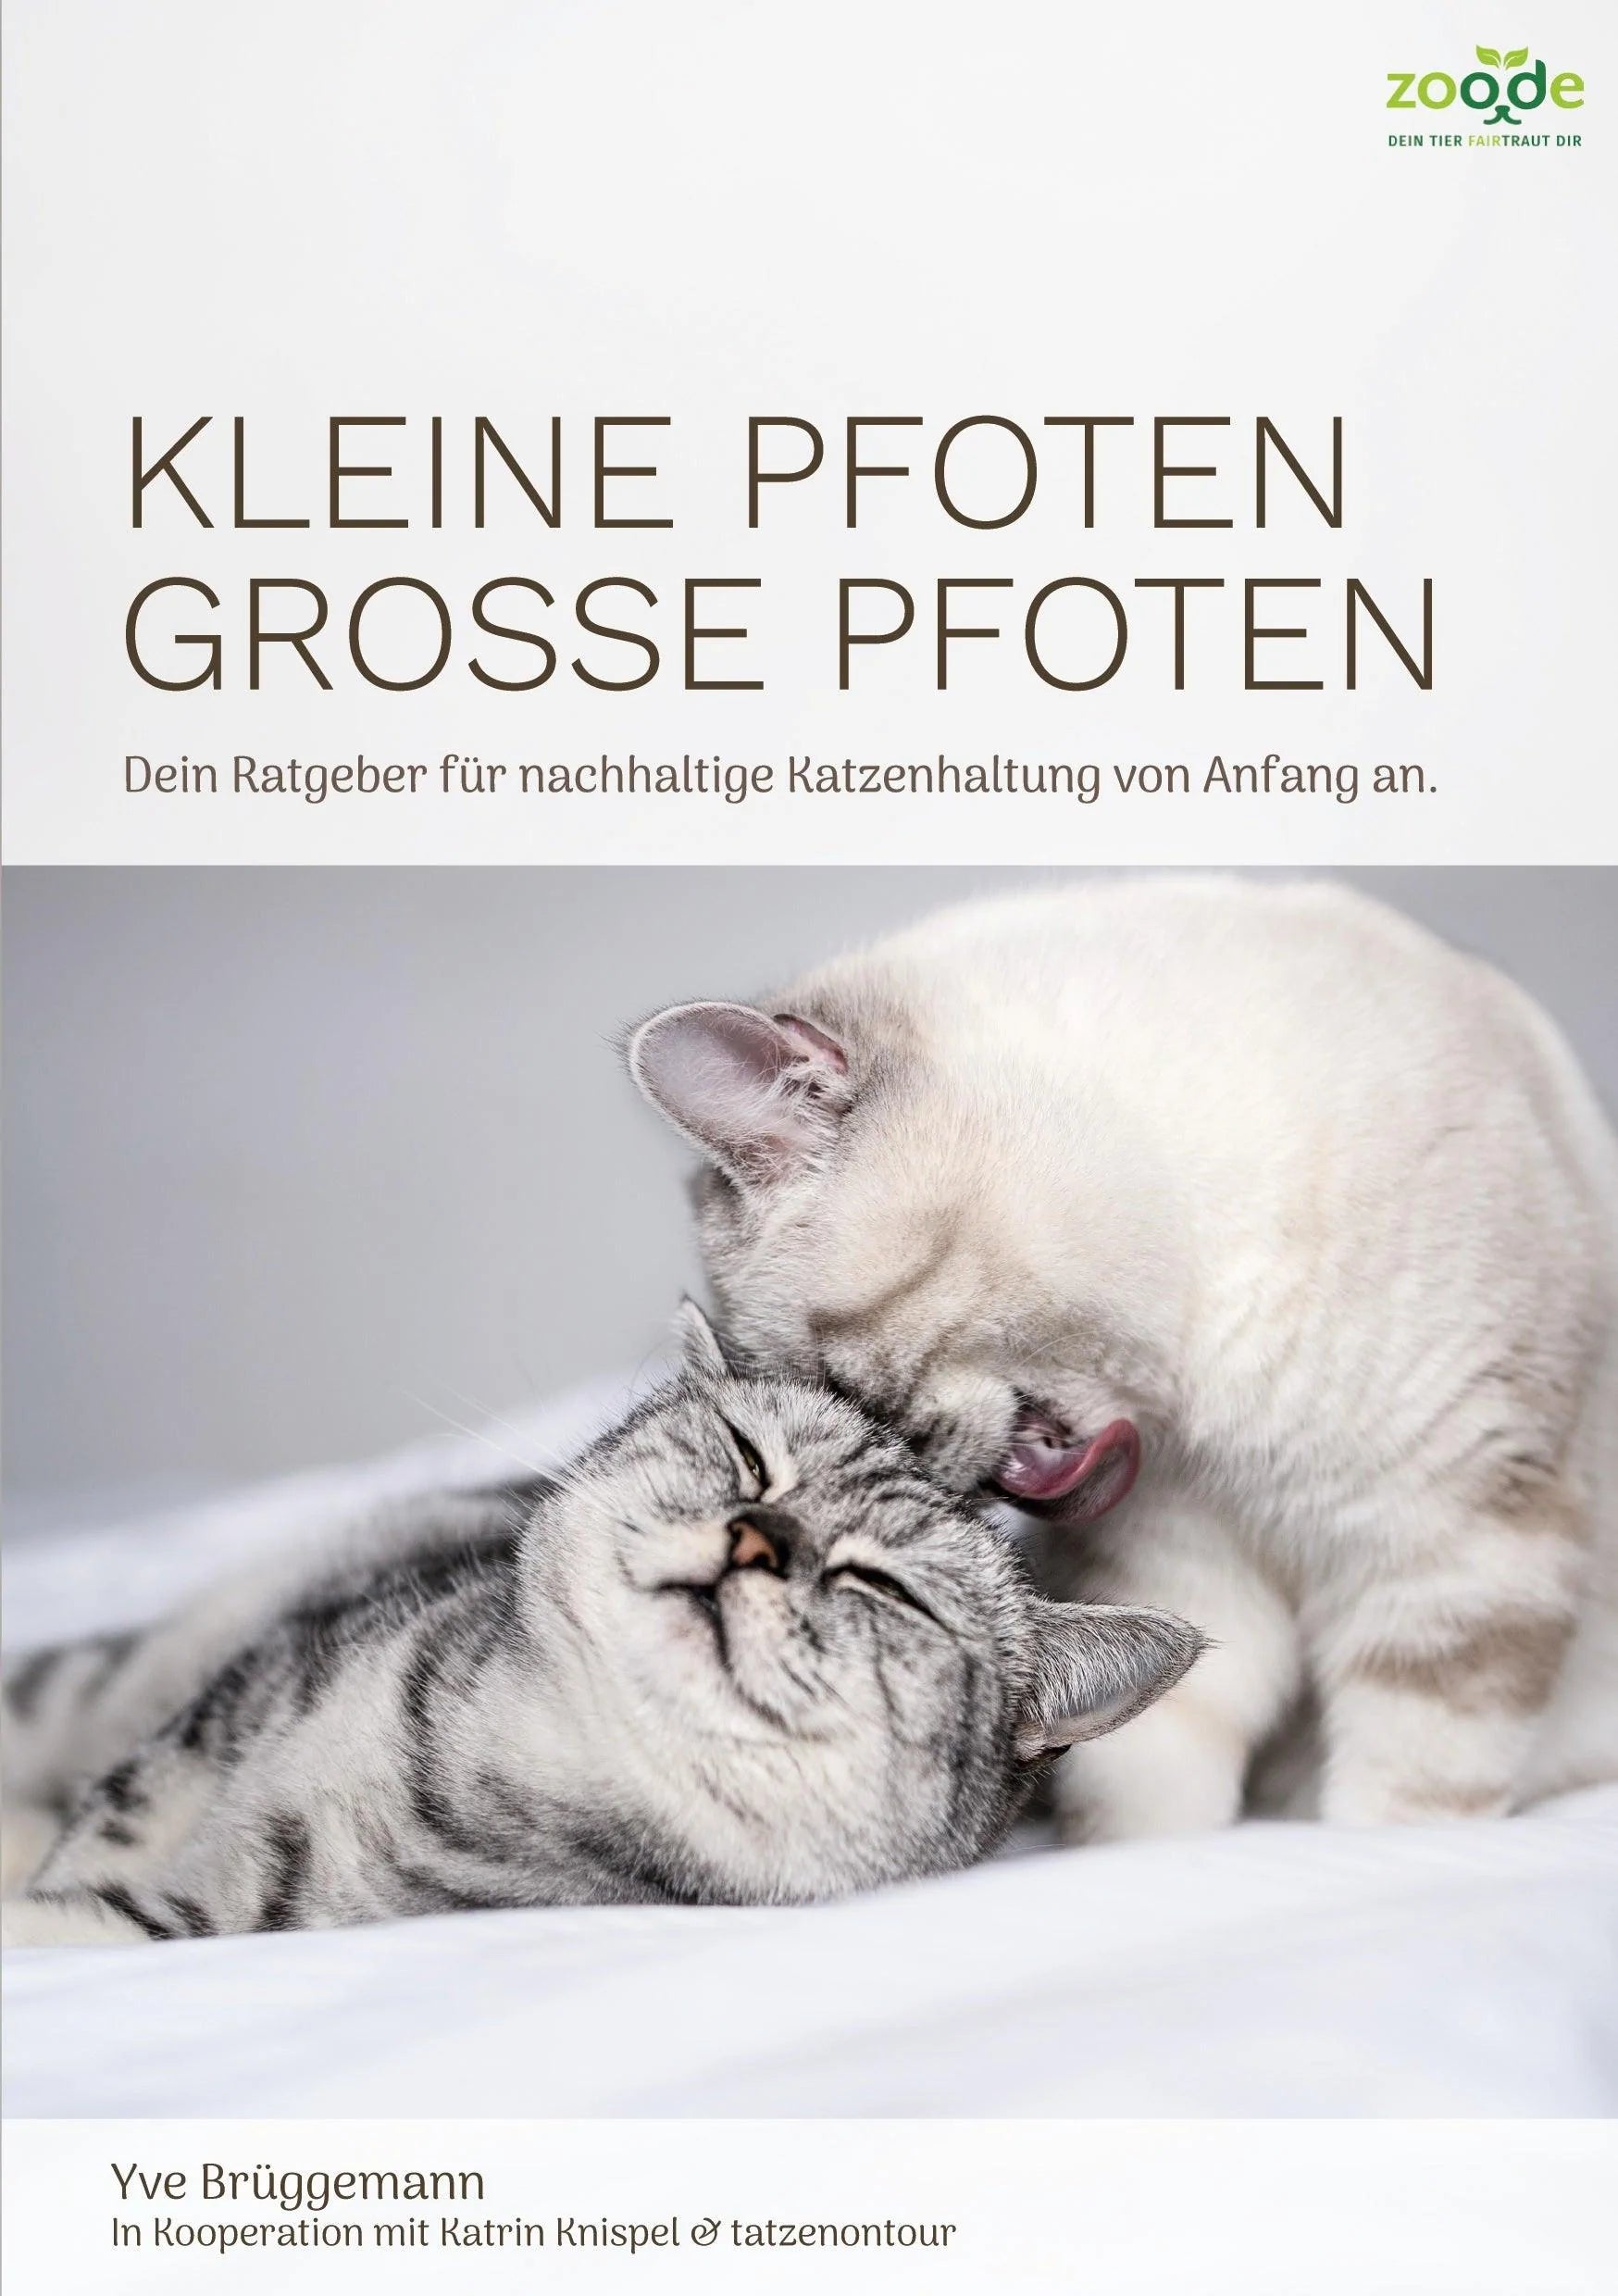 Artikel mit dem Namen Kleine Pfoten, Große Pfoten - Katzenratgeber (eBook) im Shop von zoo.de , dem Onlineshop für nachhaltiges Hundefutter und Katzenfutter.